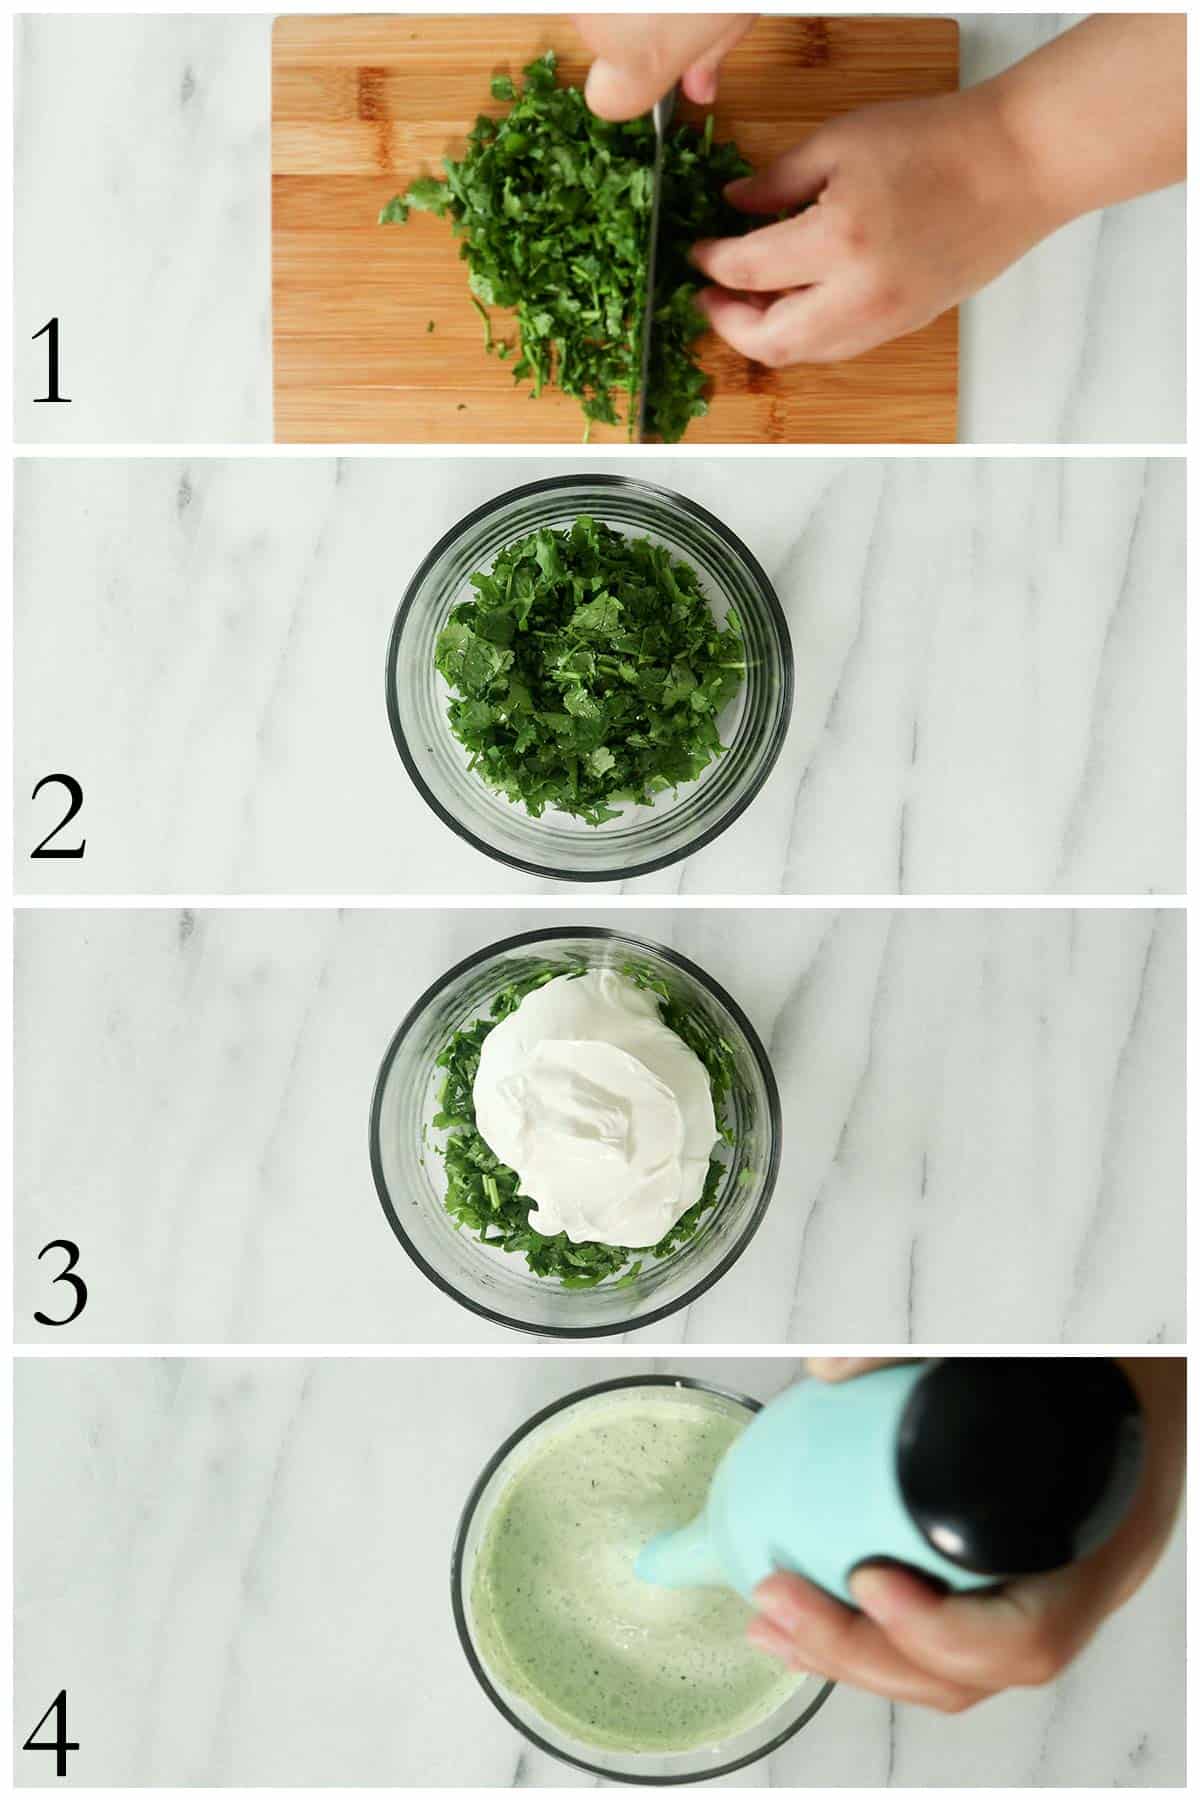 imagenes de los pasos a seguir para preparar una salsa de cilantro.